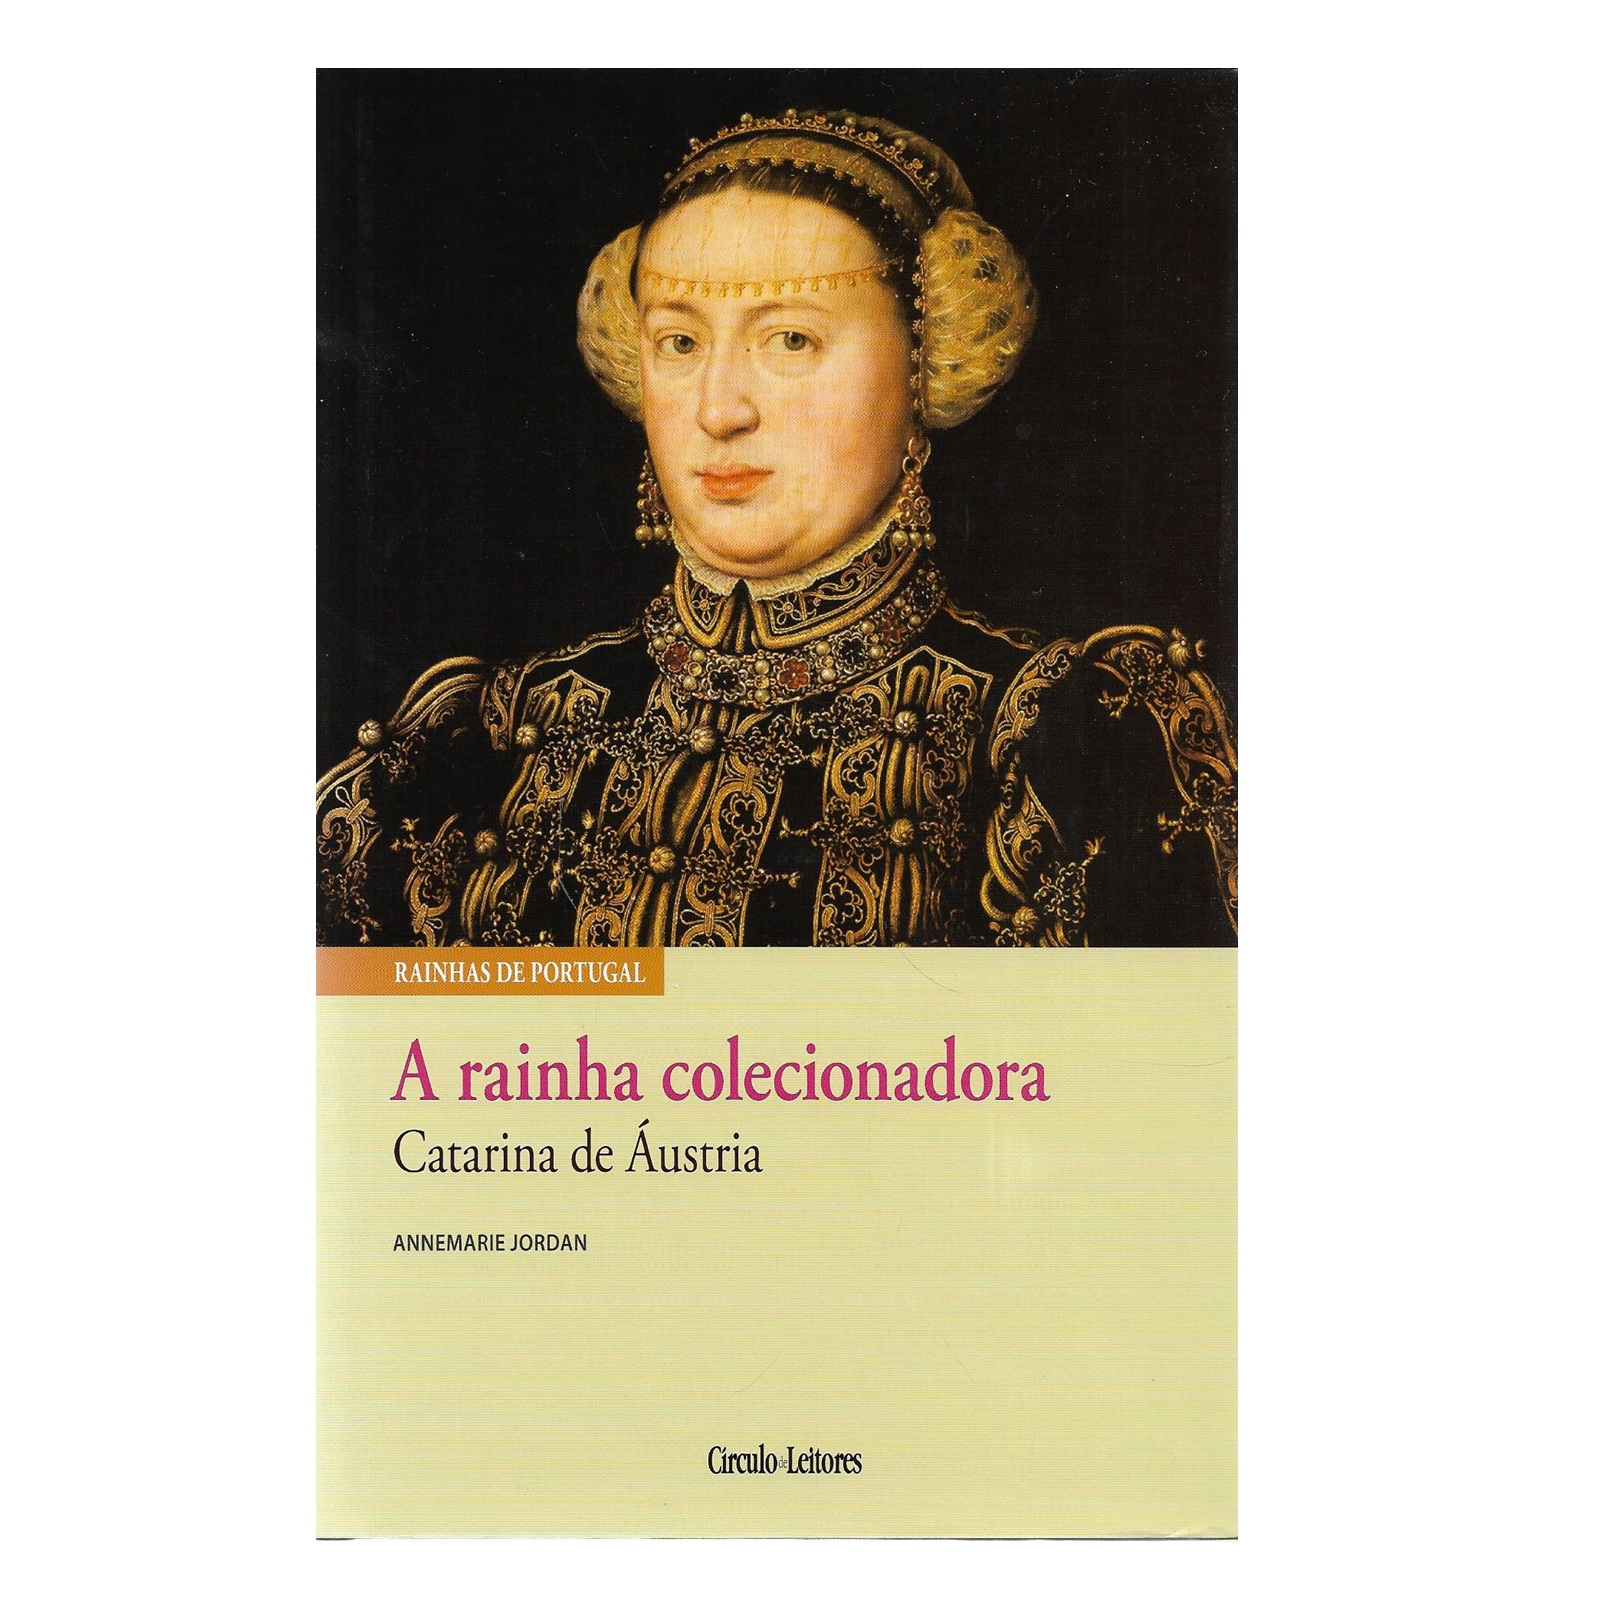 A RAINHA COLECIONADORA: CATARINA DE ÁUSTRIA